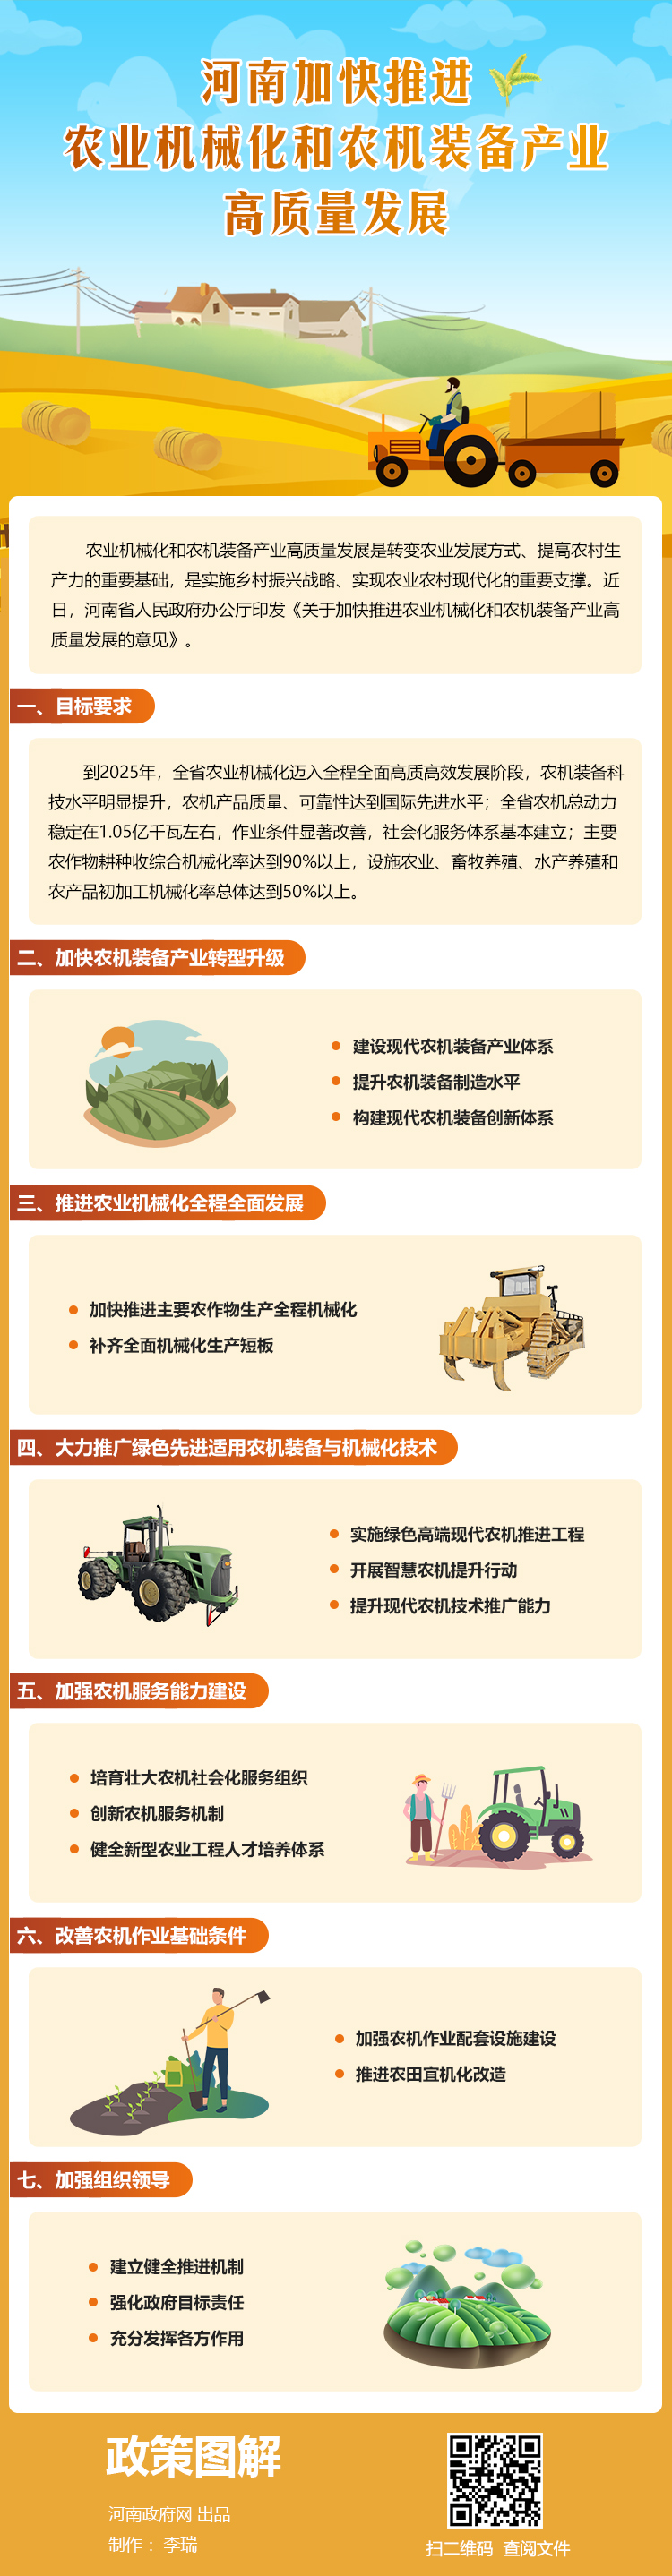 图解：河南加快推进农业机械化和农机装备产业高质量发展